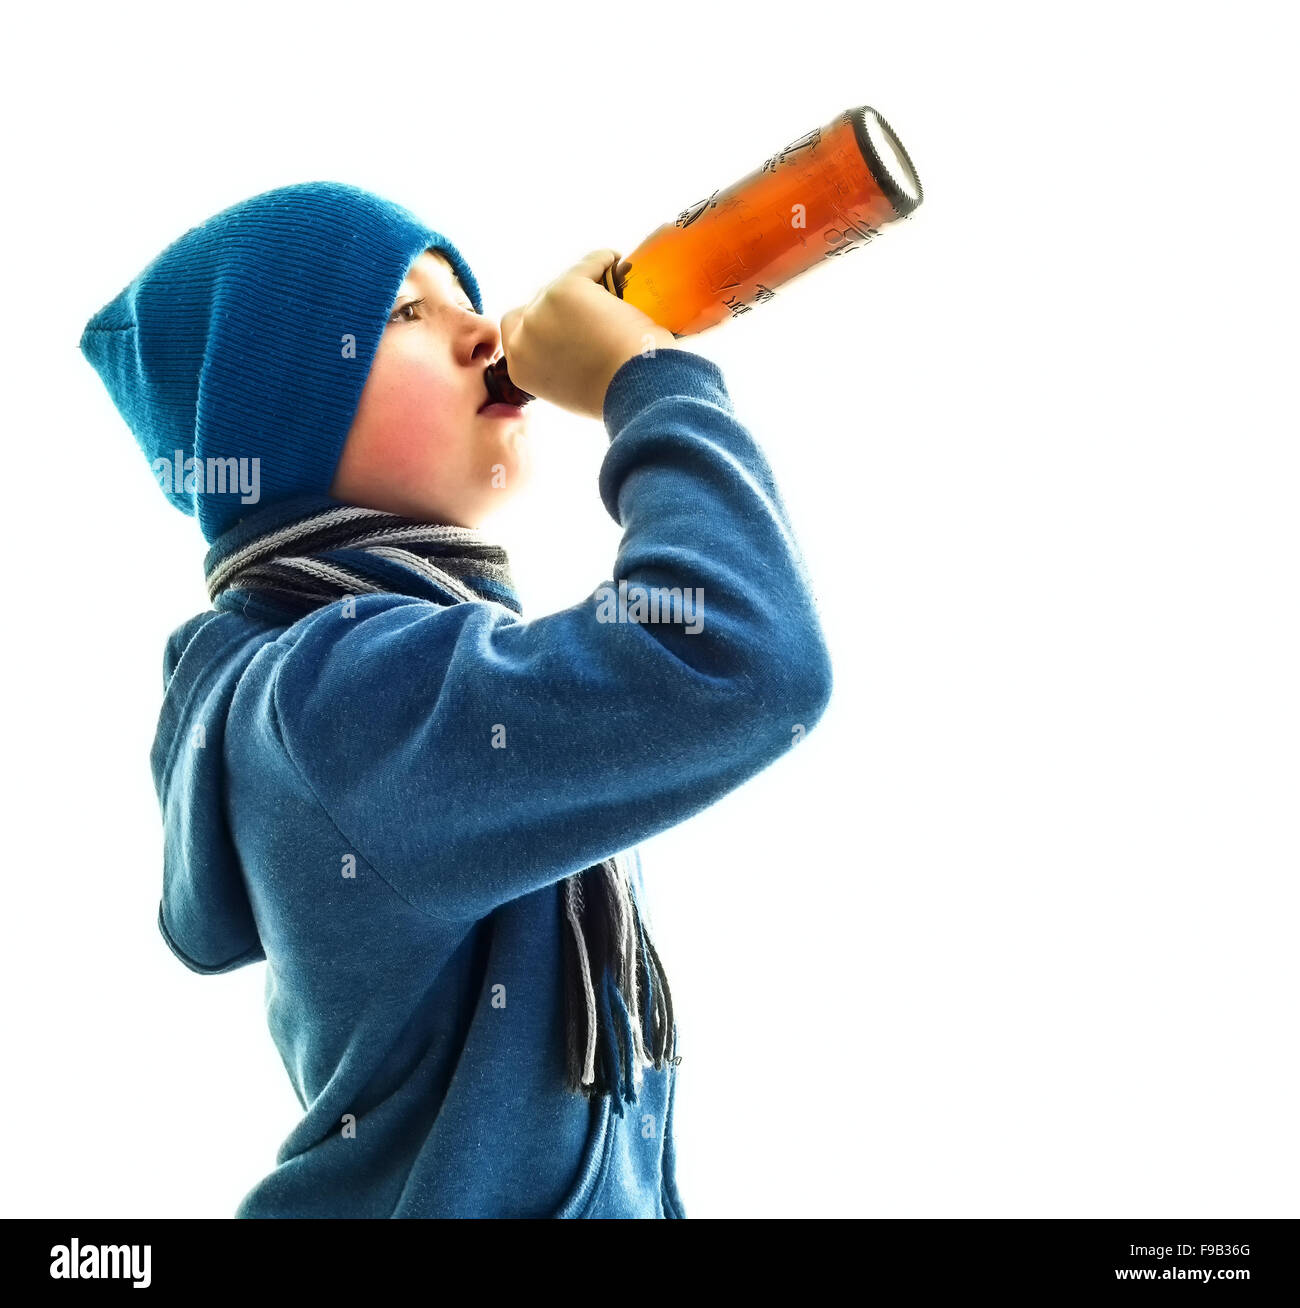 La consommation de l'alcool jeune mineur boit de la bière en bouteille, les jeunes questions sociales concept Banque D'Images